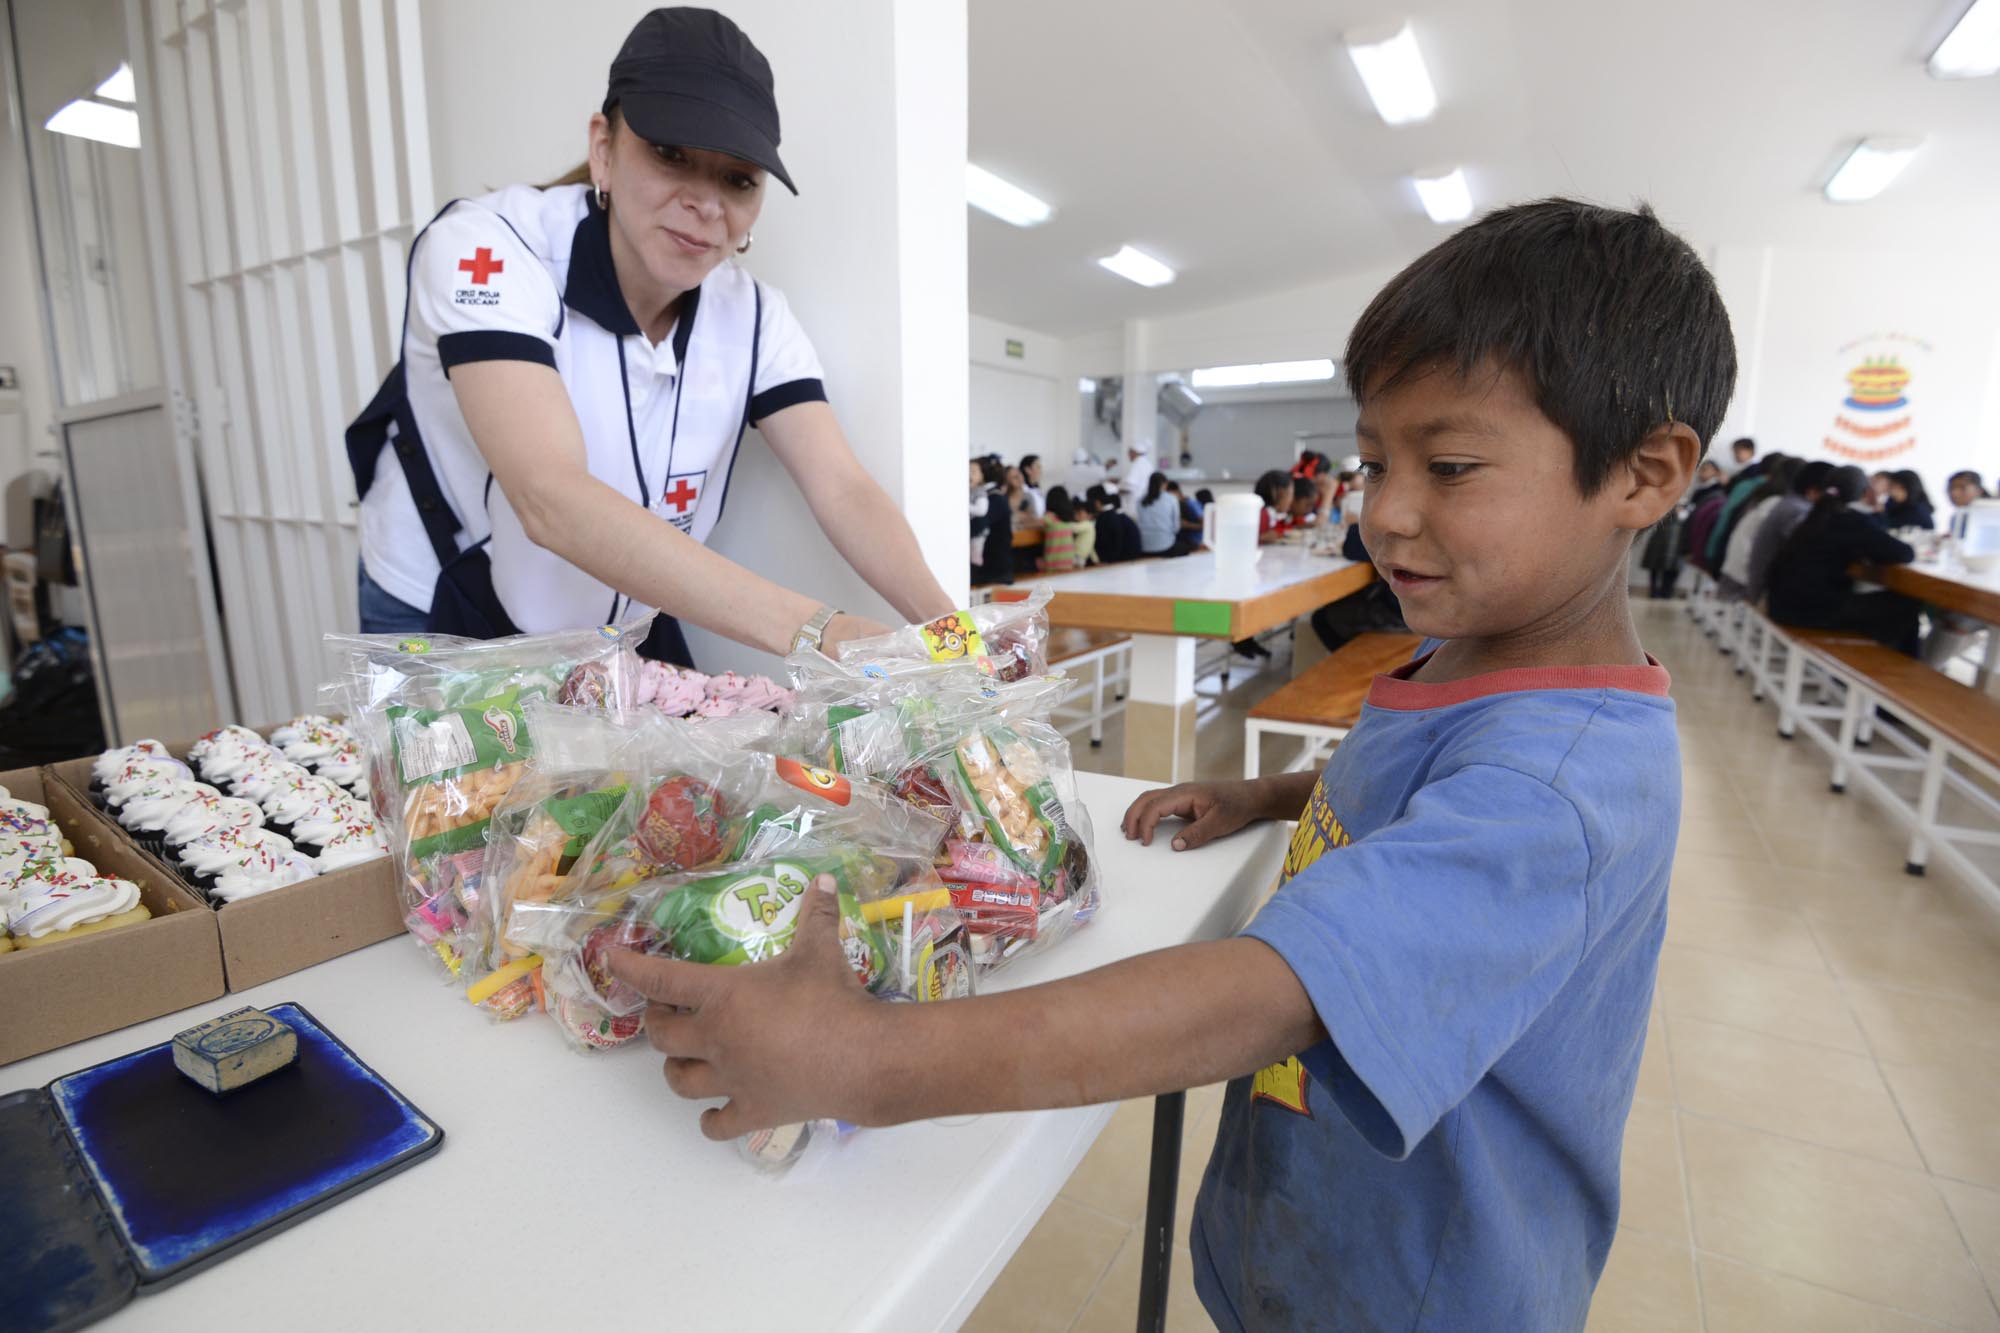 Celebró Cruz Roja Mexicana el Día del Niño con quienes viven en pobreza extrema